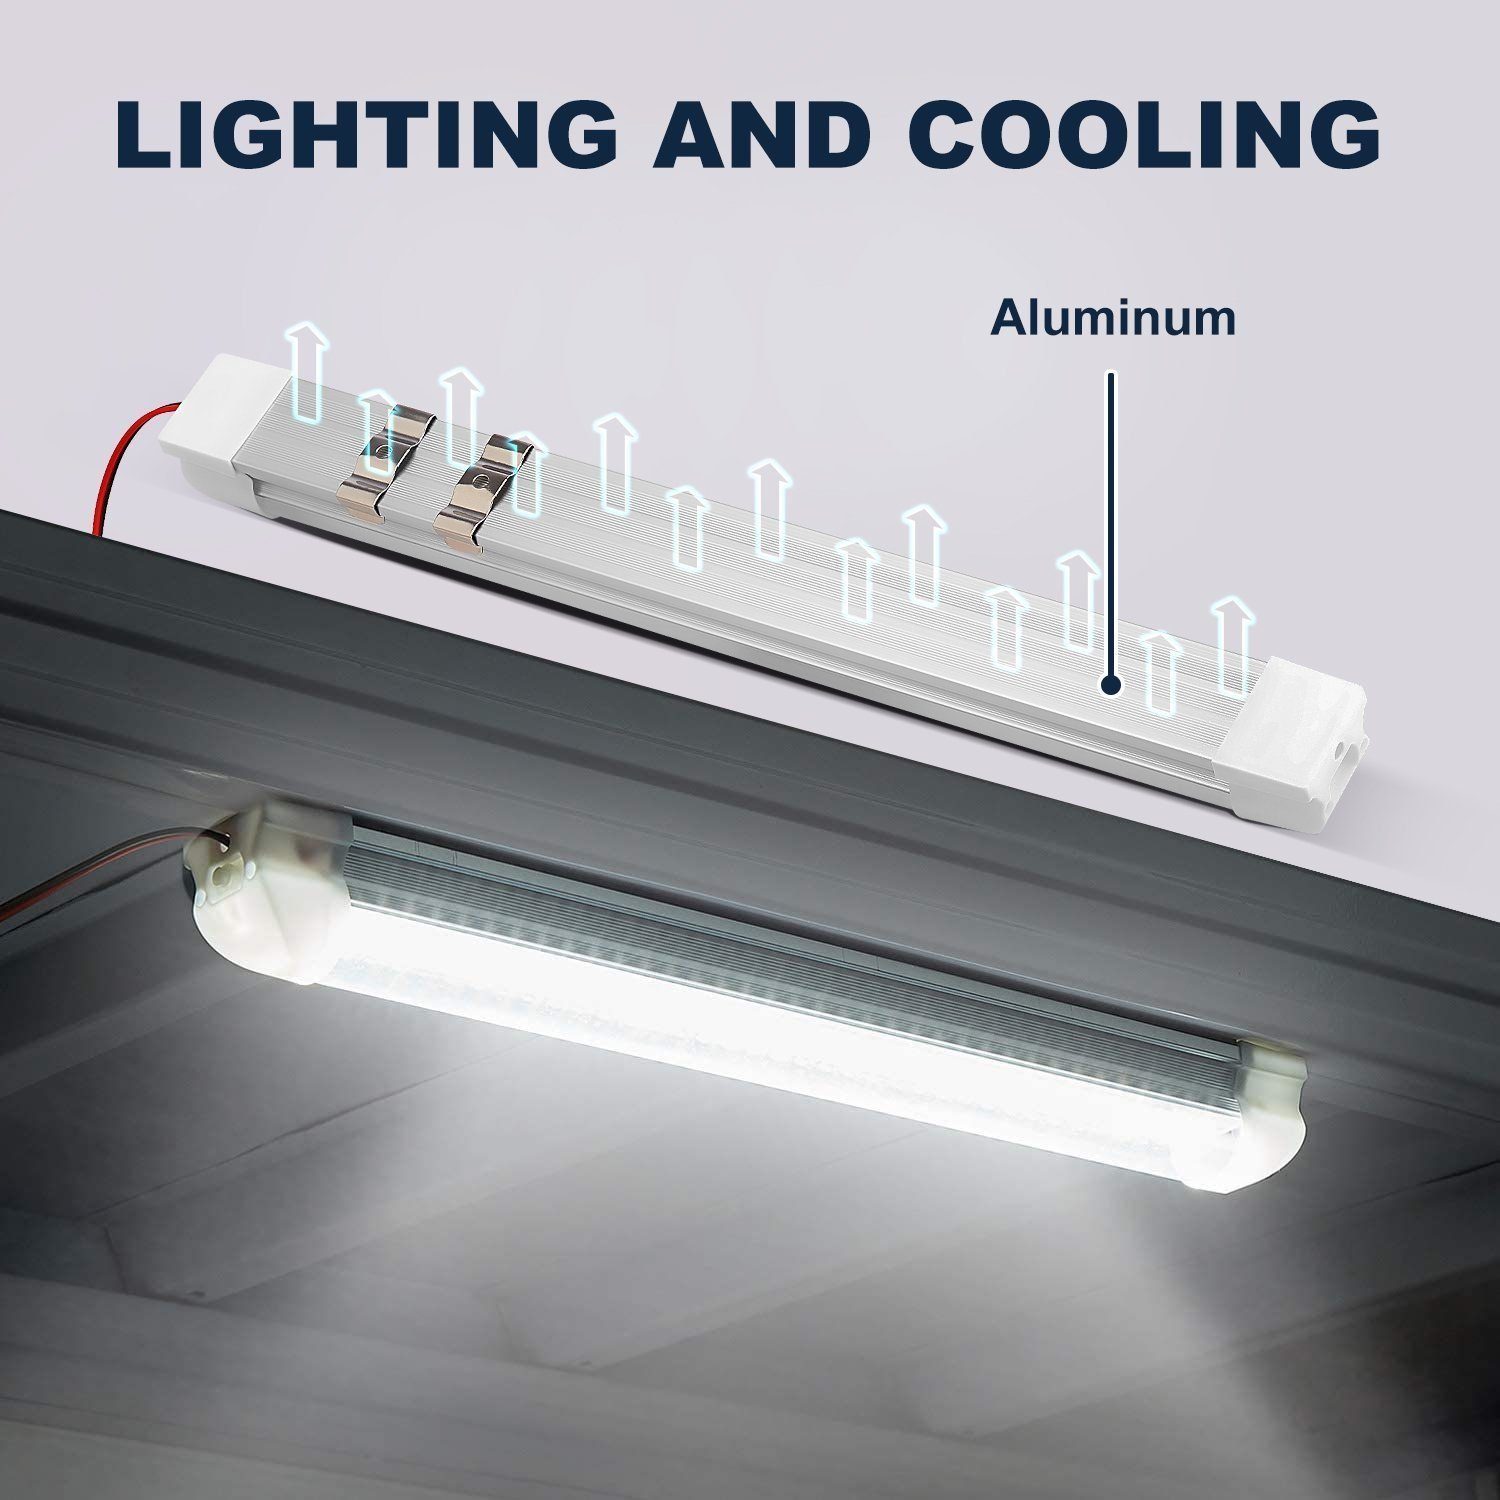 LETGOSPT LED-Streifen für LKW Wohnmobile 108LED mit LED Innenbeleuchtung Auto 2 Innenlichtleiste Schalter Stück Leuchtet, Küche Weiß EIN/AUS Van 12V